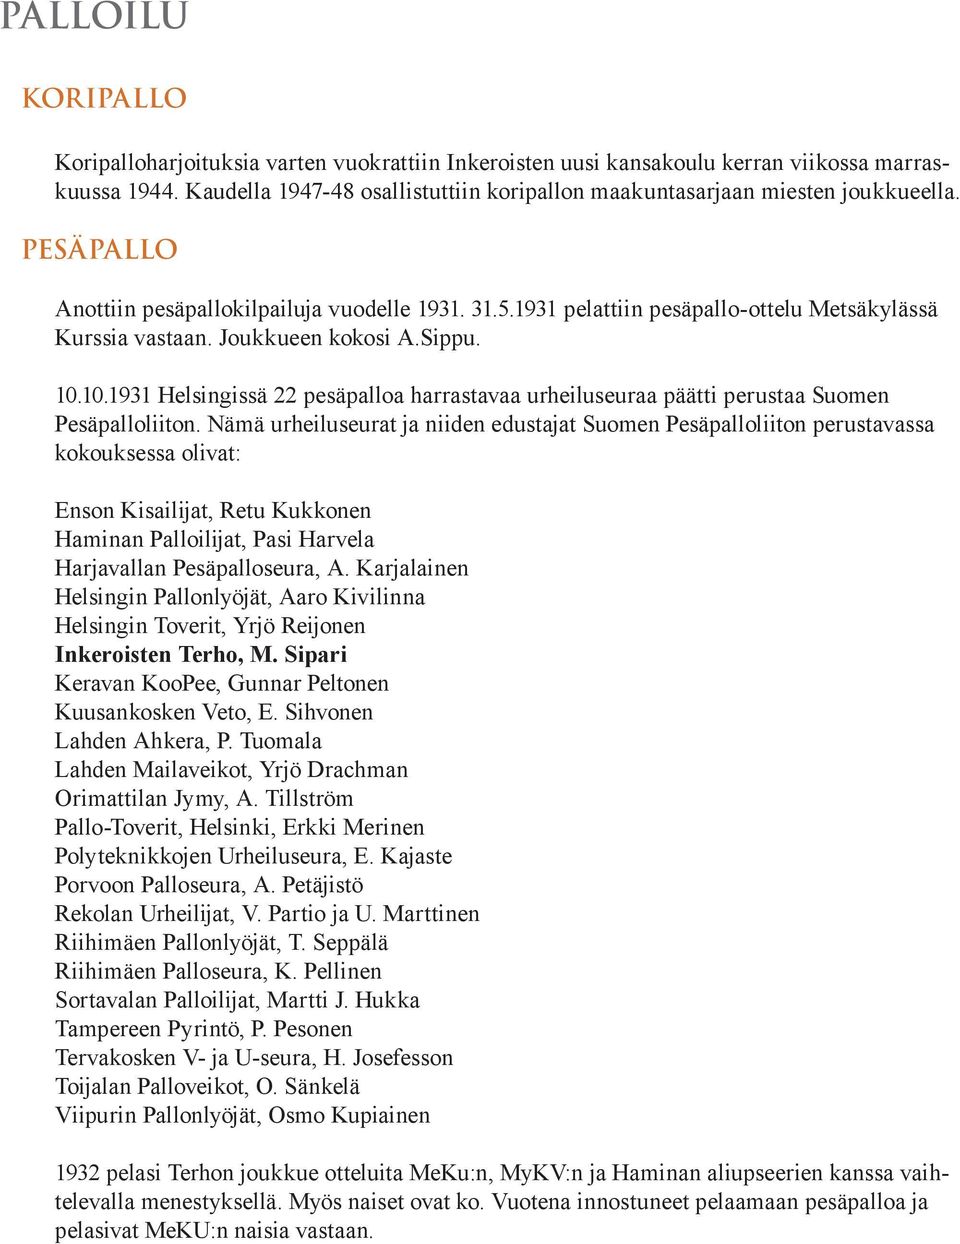 Joukkueen kokosi A.Sippu. 10.10.1931 Helsingissä 22 pesäpalloa harrastavaa urheiluseuraa päätti perustaa Suomen Pesäpalloliiton.